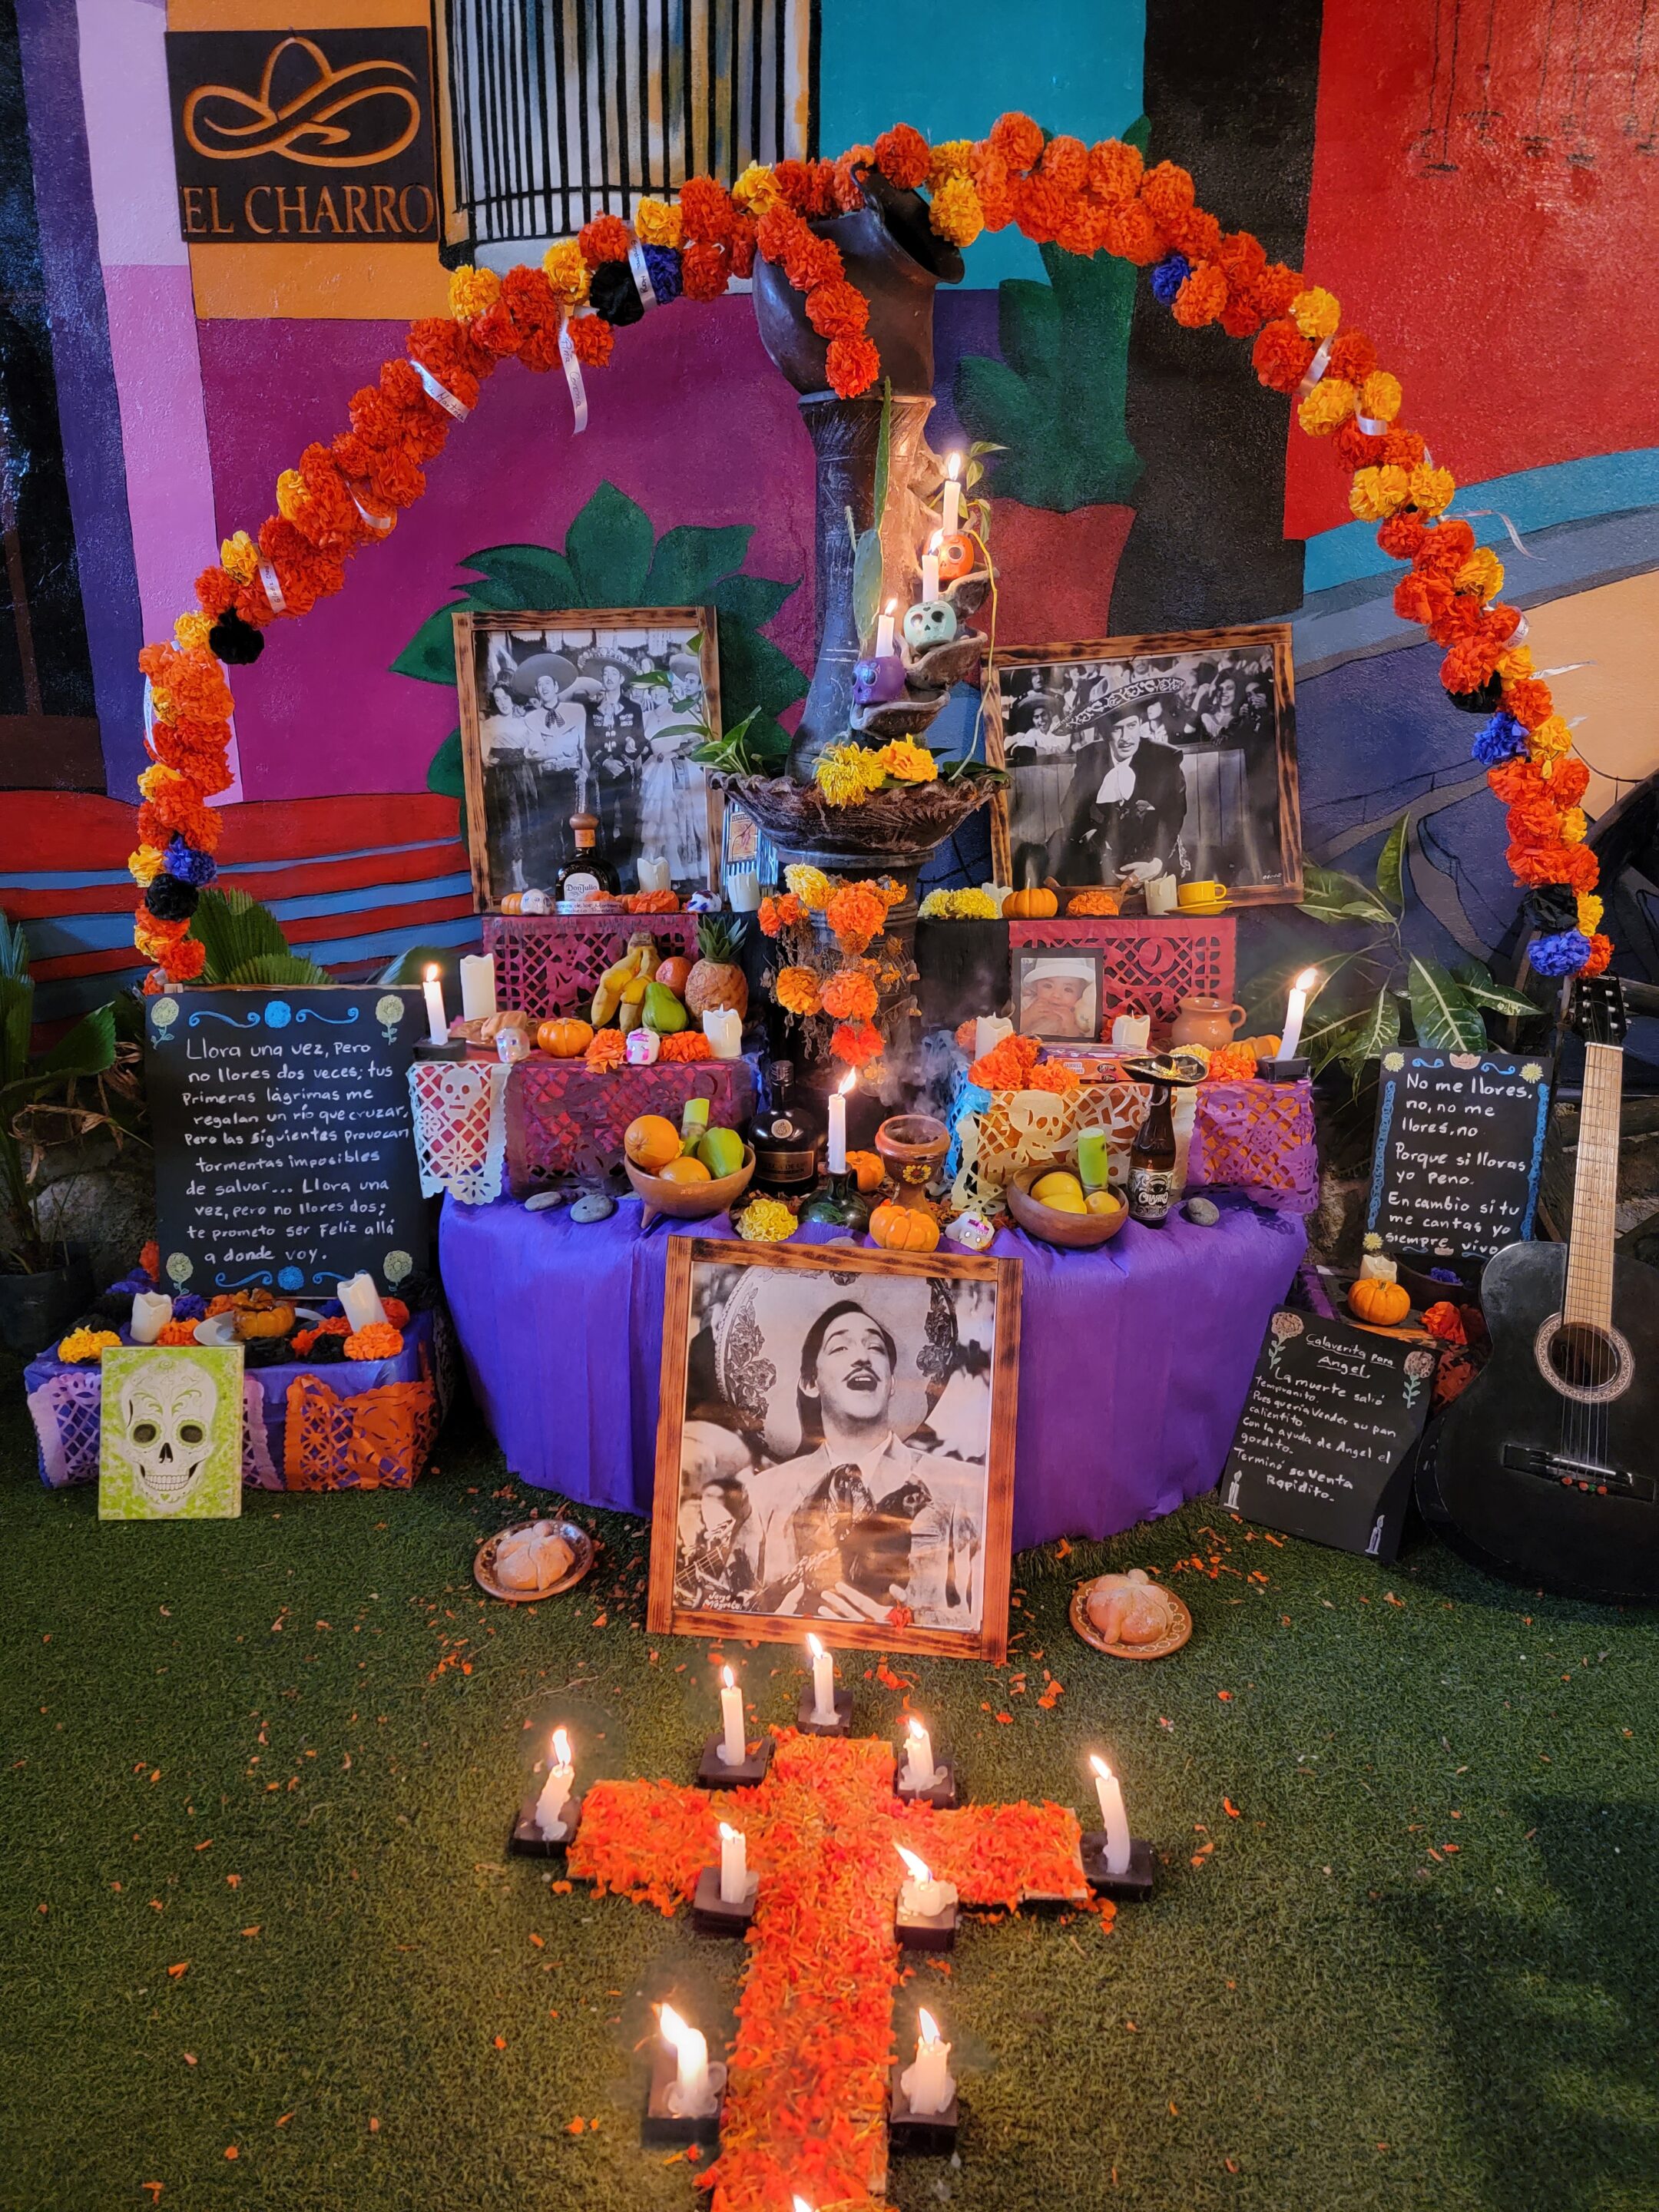 The altar for Dia de Muertos at El Charro restaurant in Puerto Morelos.